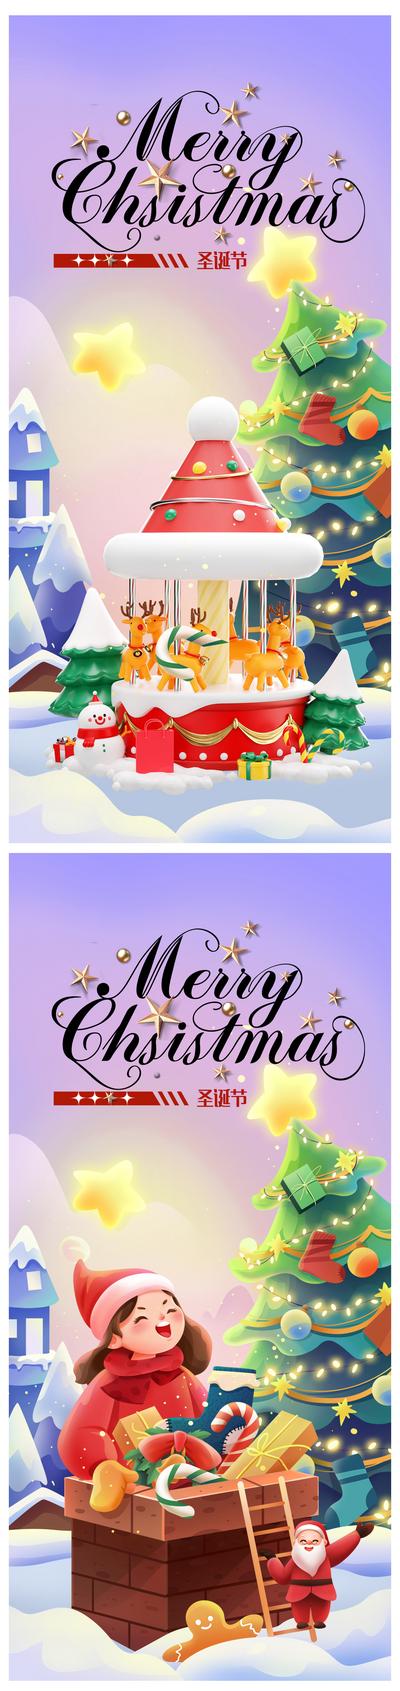 南门网 海报 公历节日 圣诞节 平安 缤纷 插画 礼盒 圣诞老人 系列